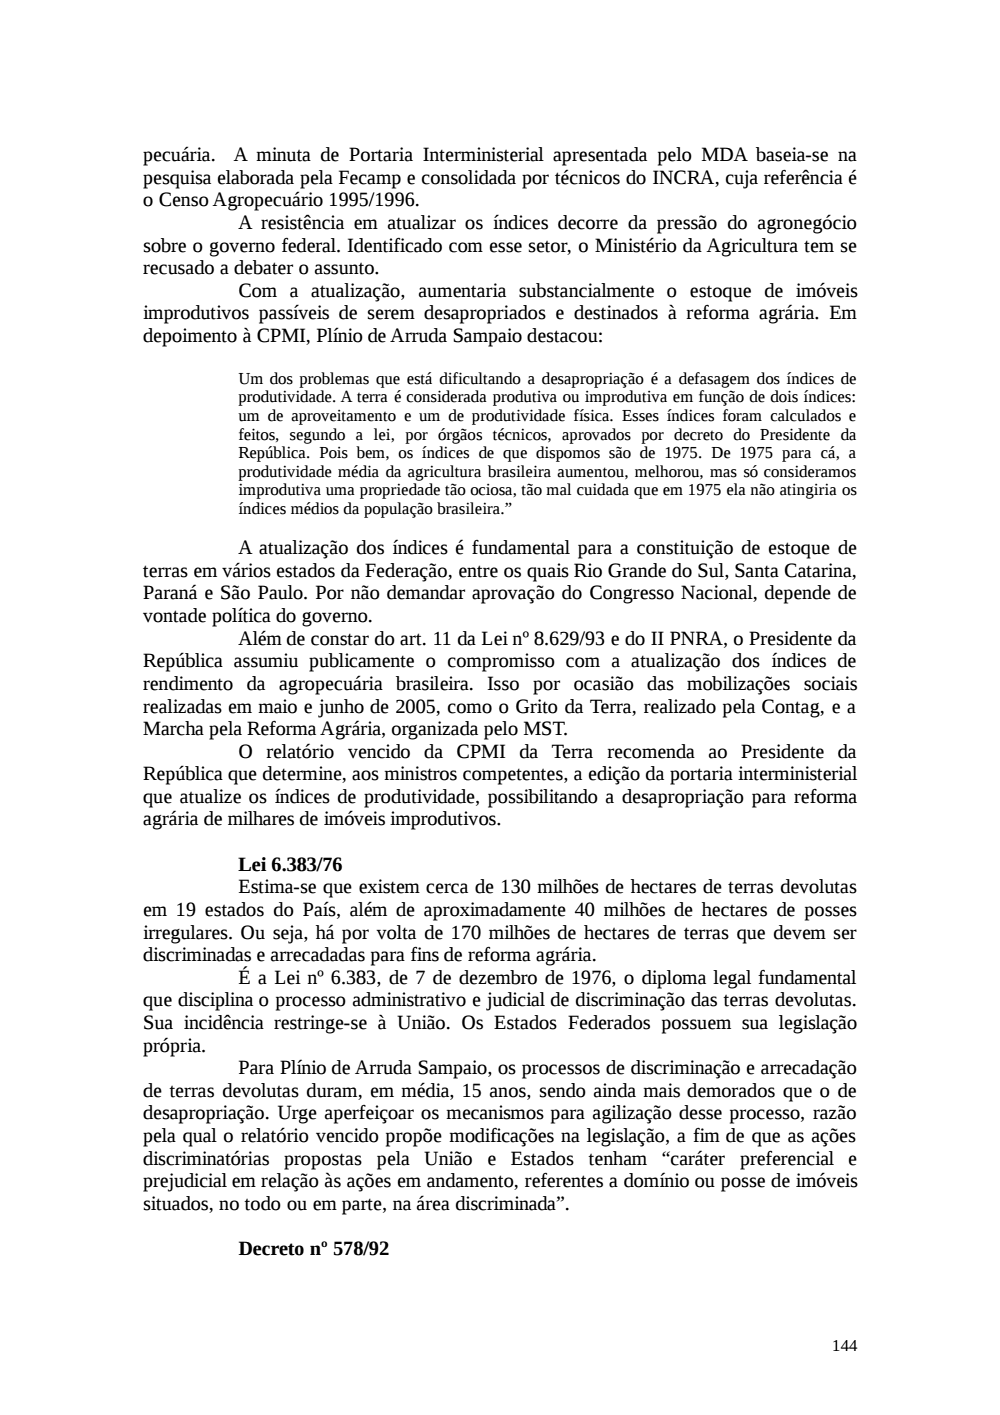 Page 144 from Relatório final da comissão